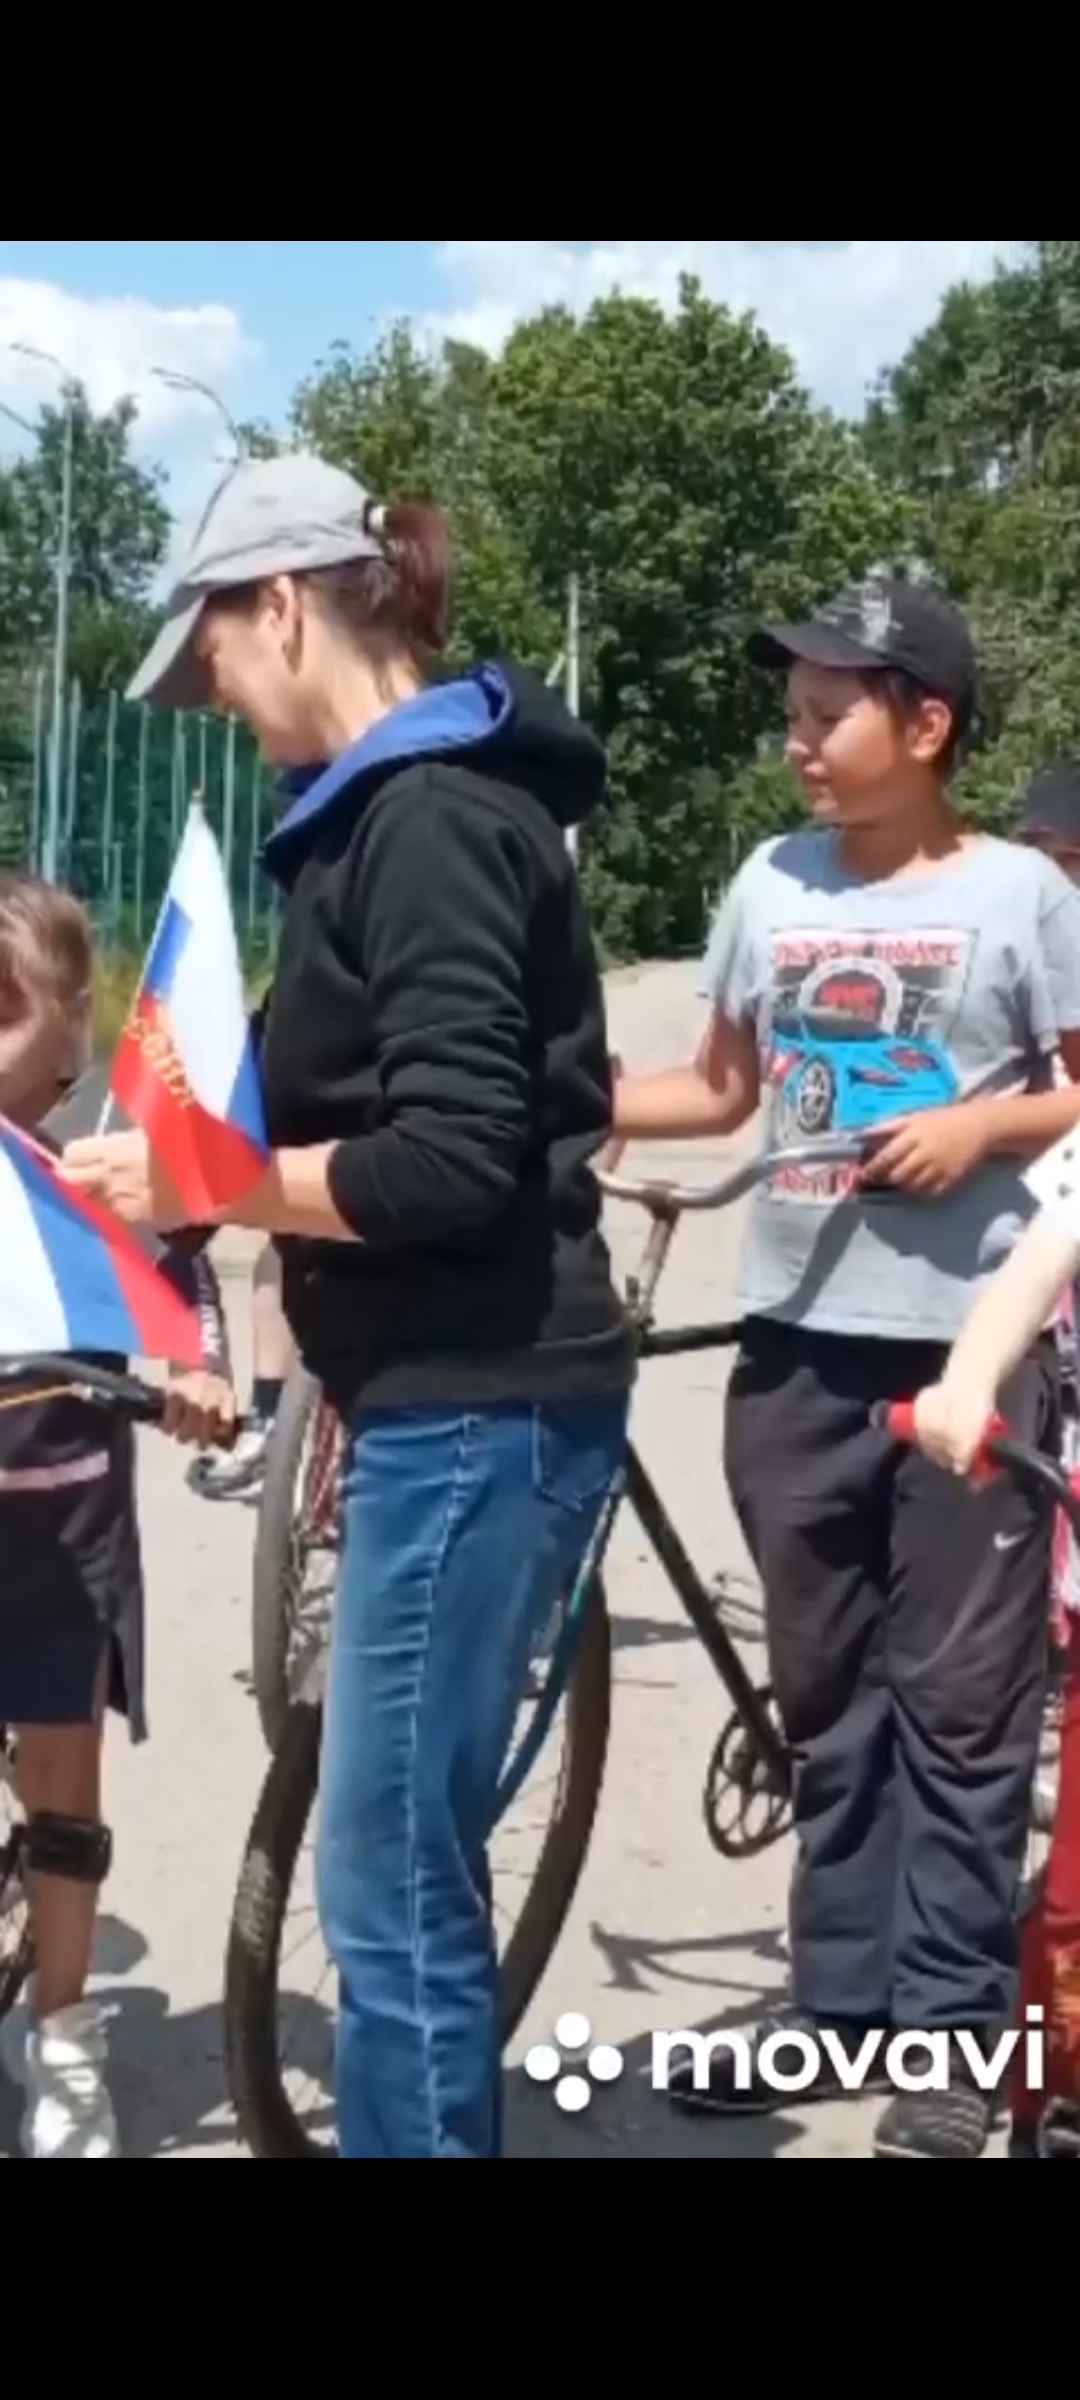 Совместно с ДК ребята участвовали в велопробеге с российским триколором